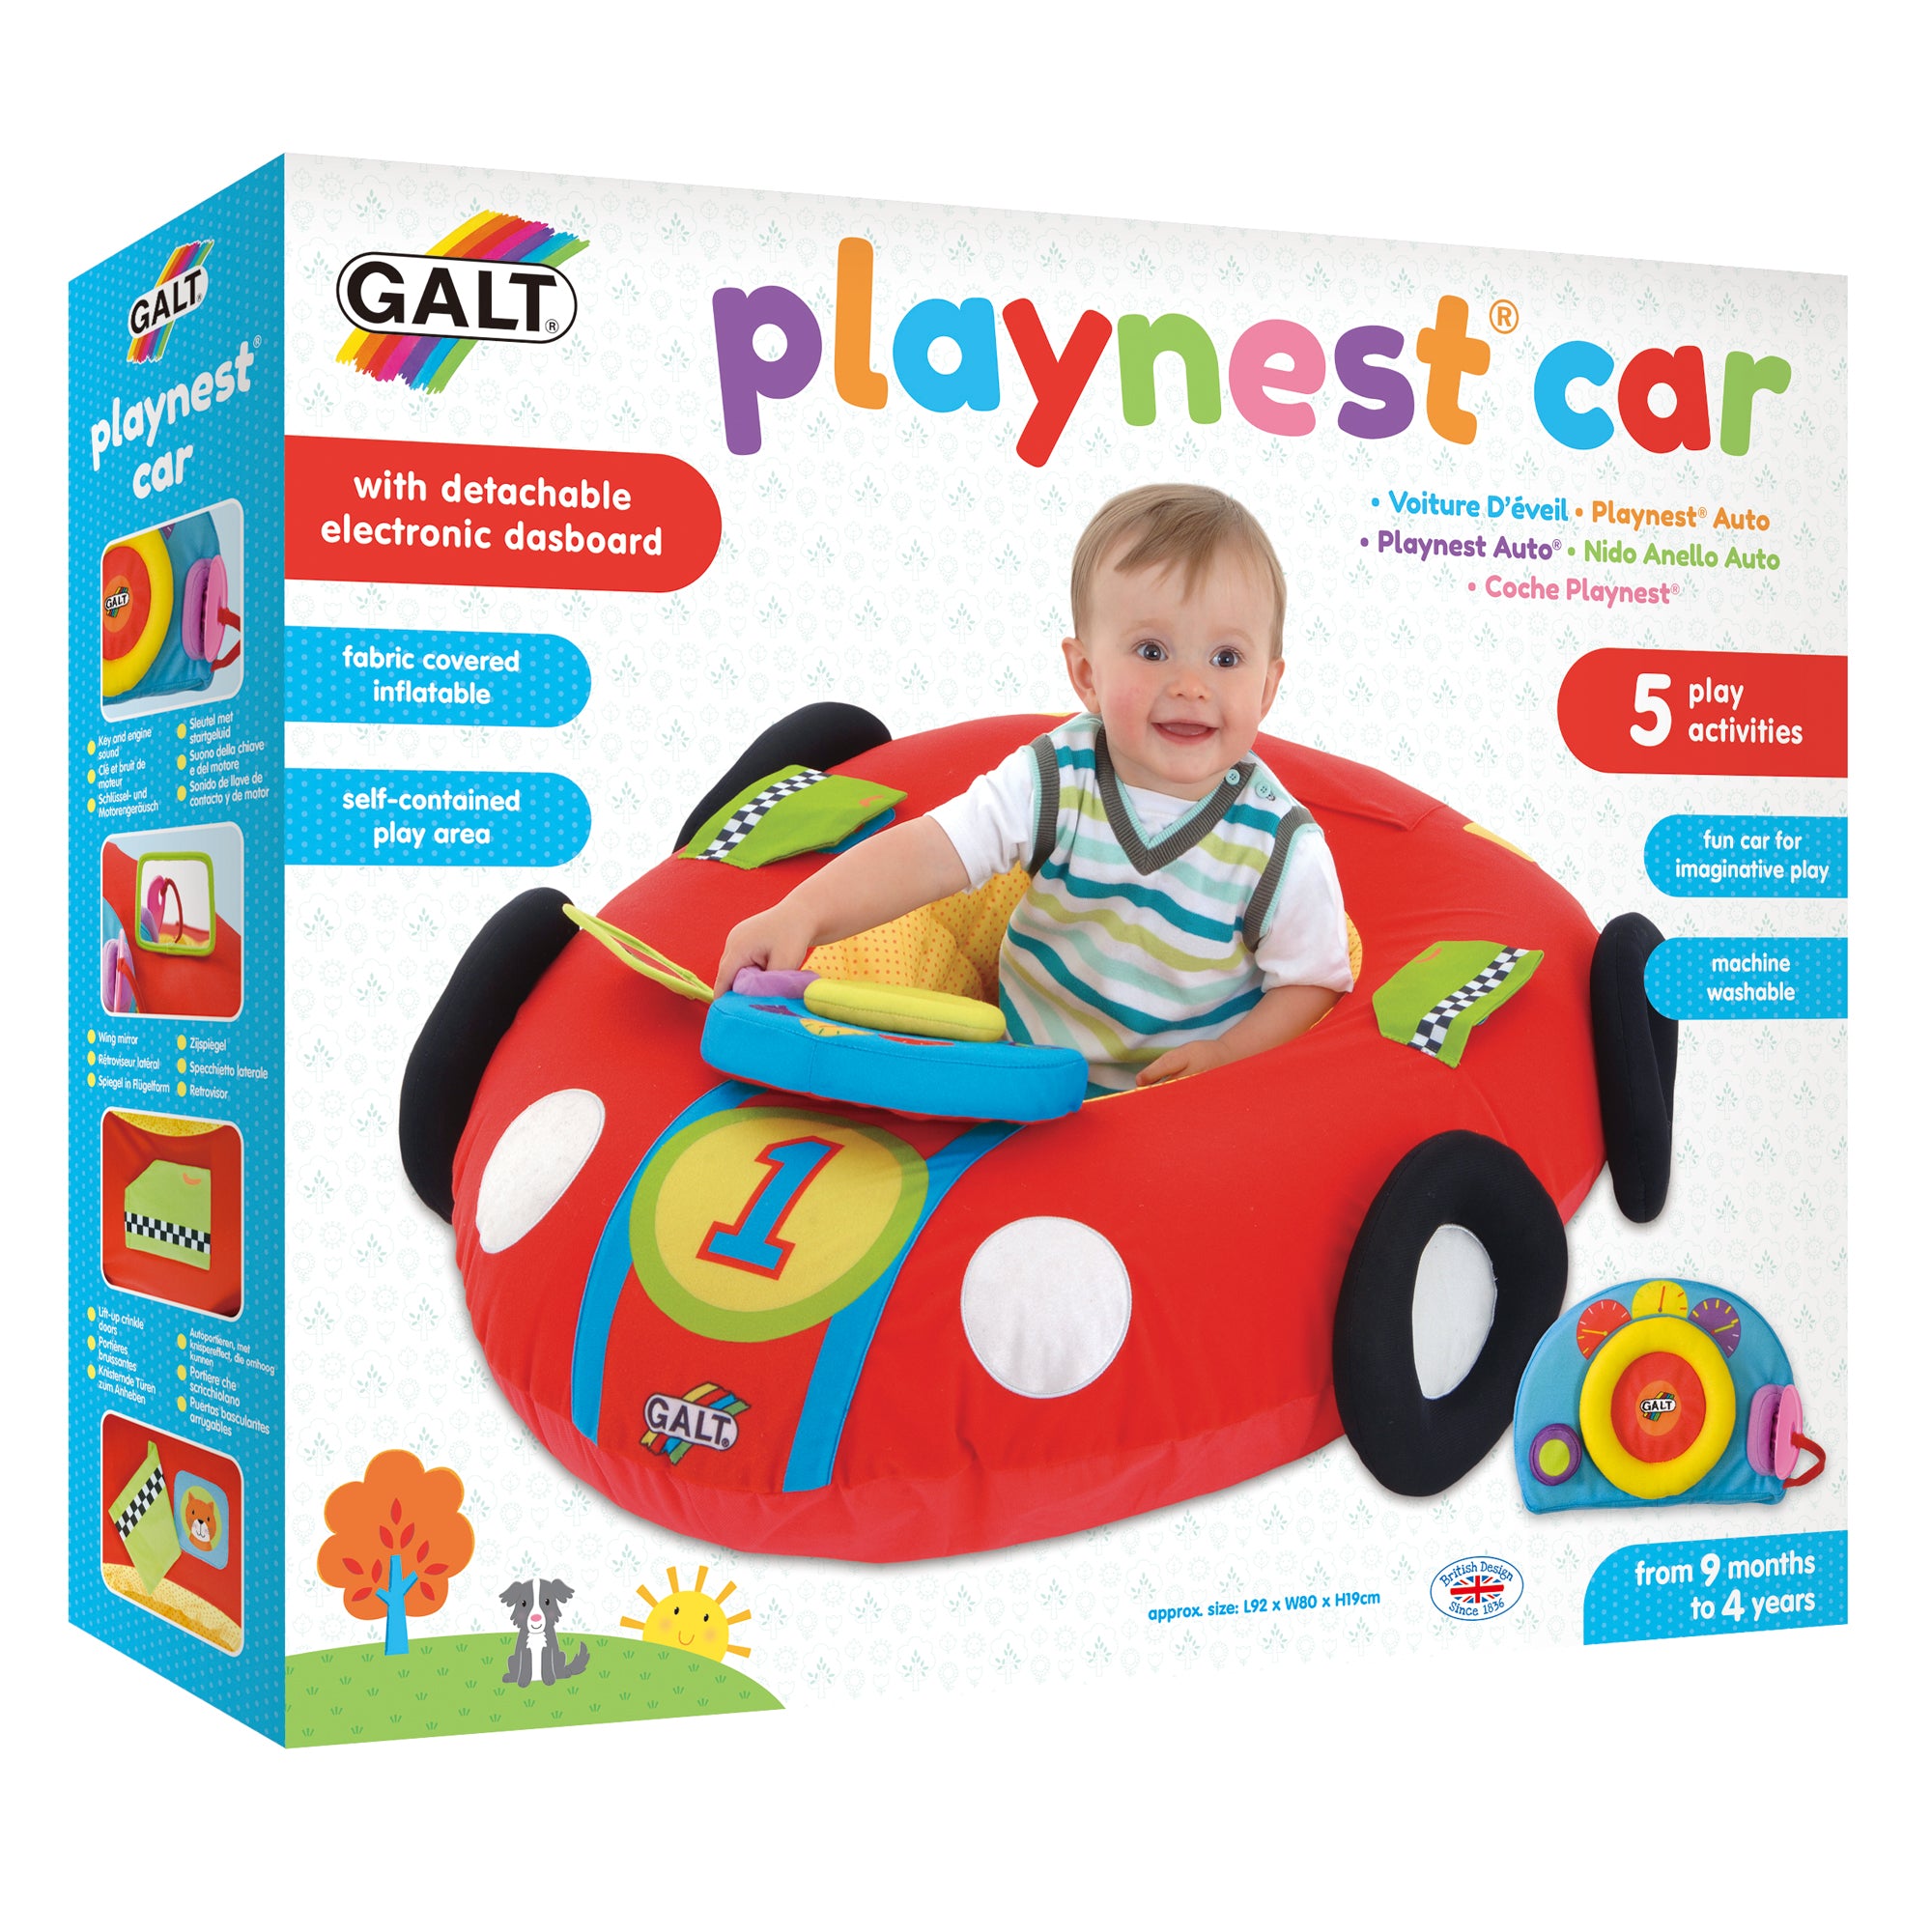 Playnest® Car – Galt Toys UK